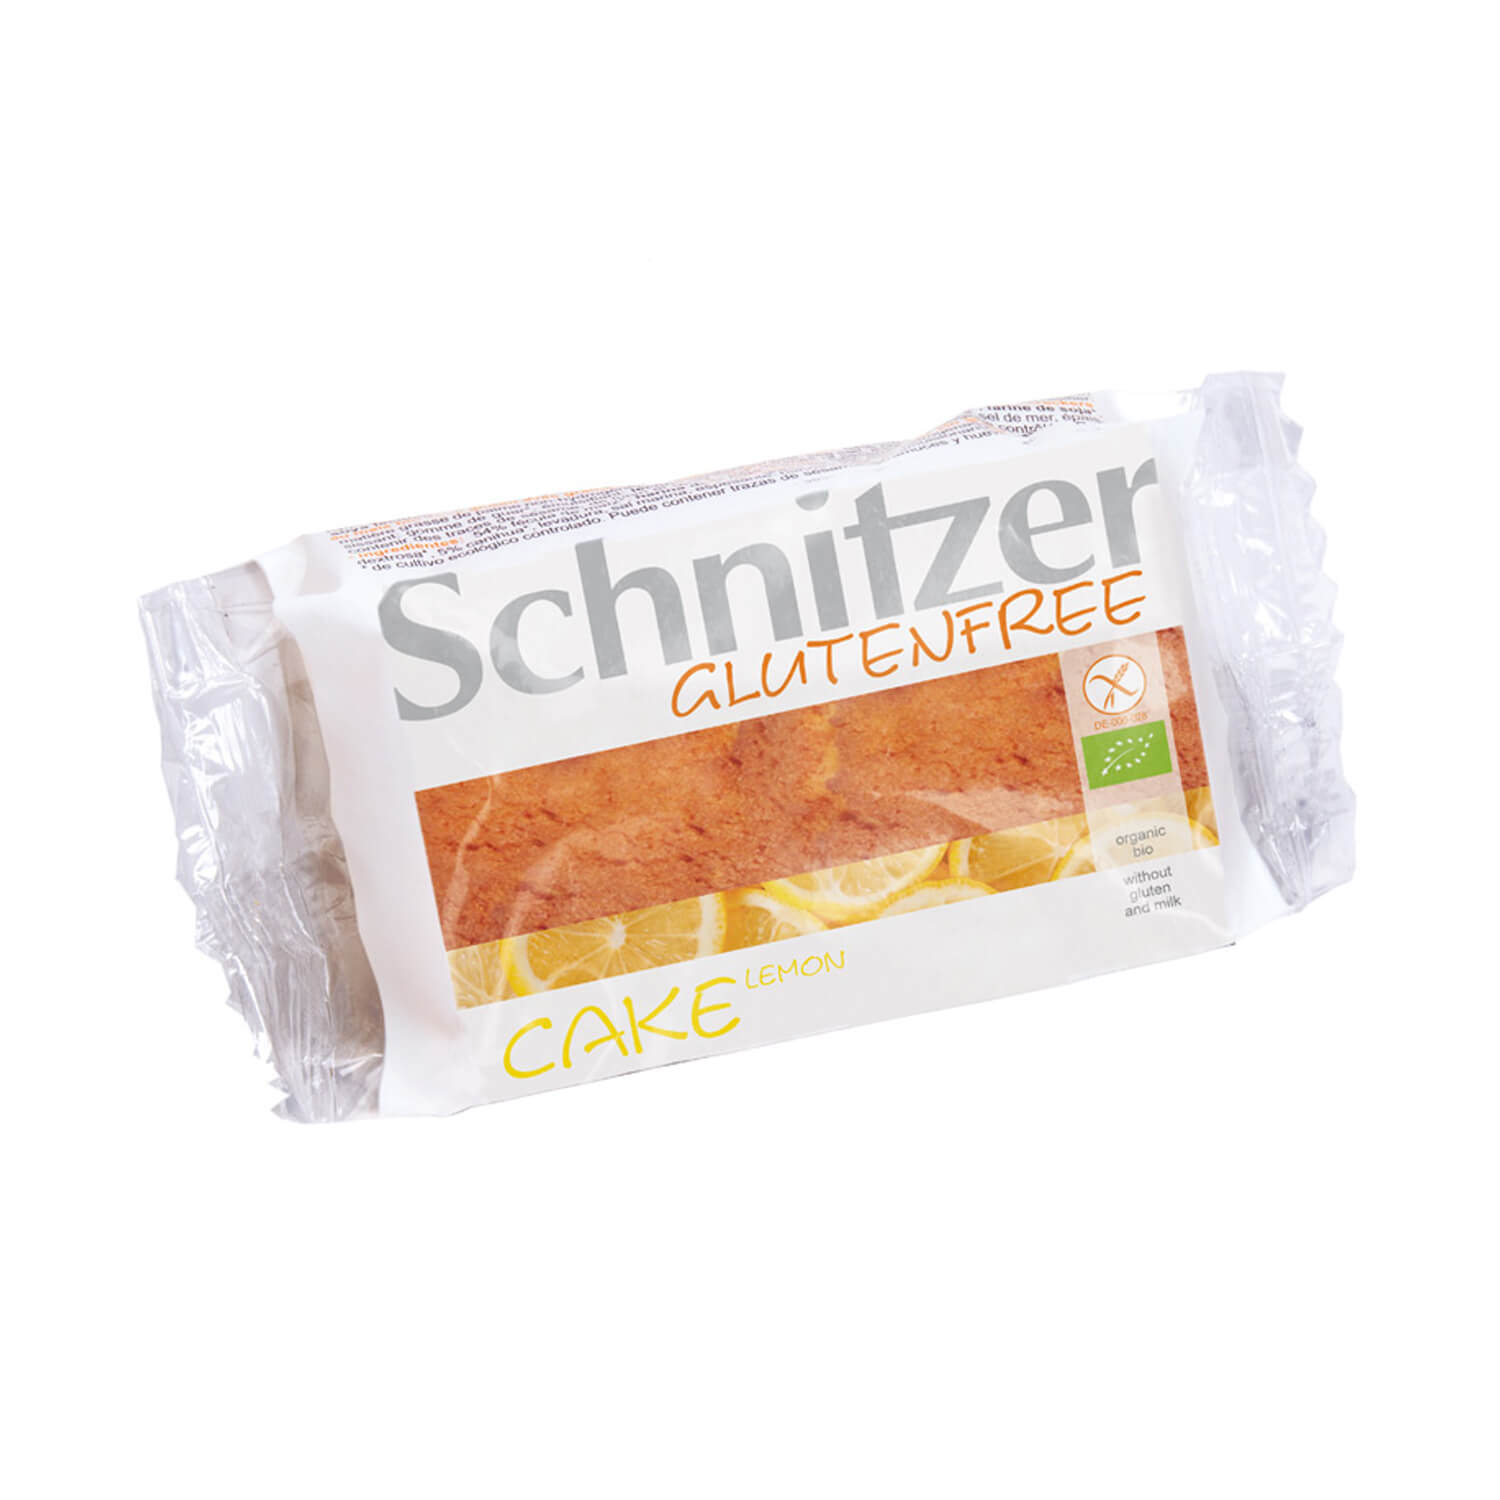 Bábovka Schnitzer citrónová bio bezgluténová 200g